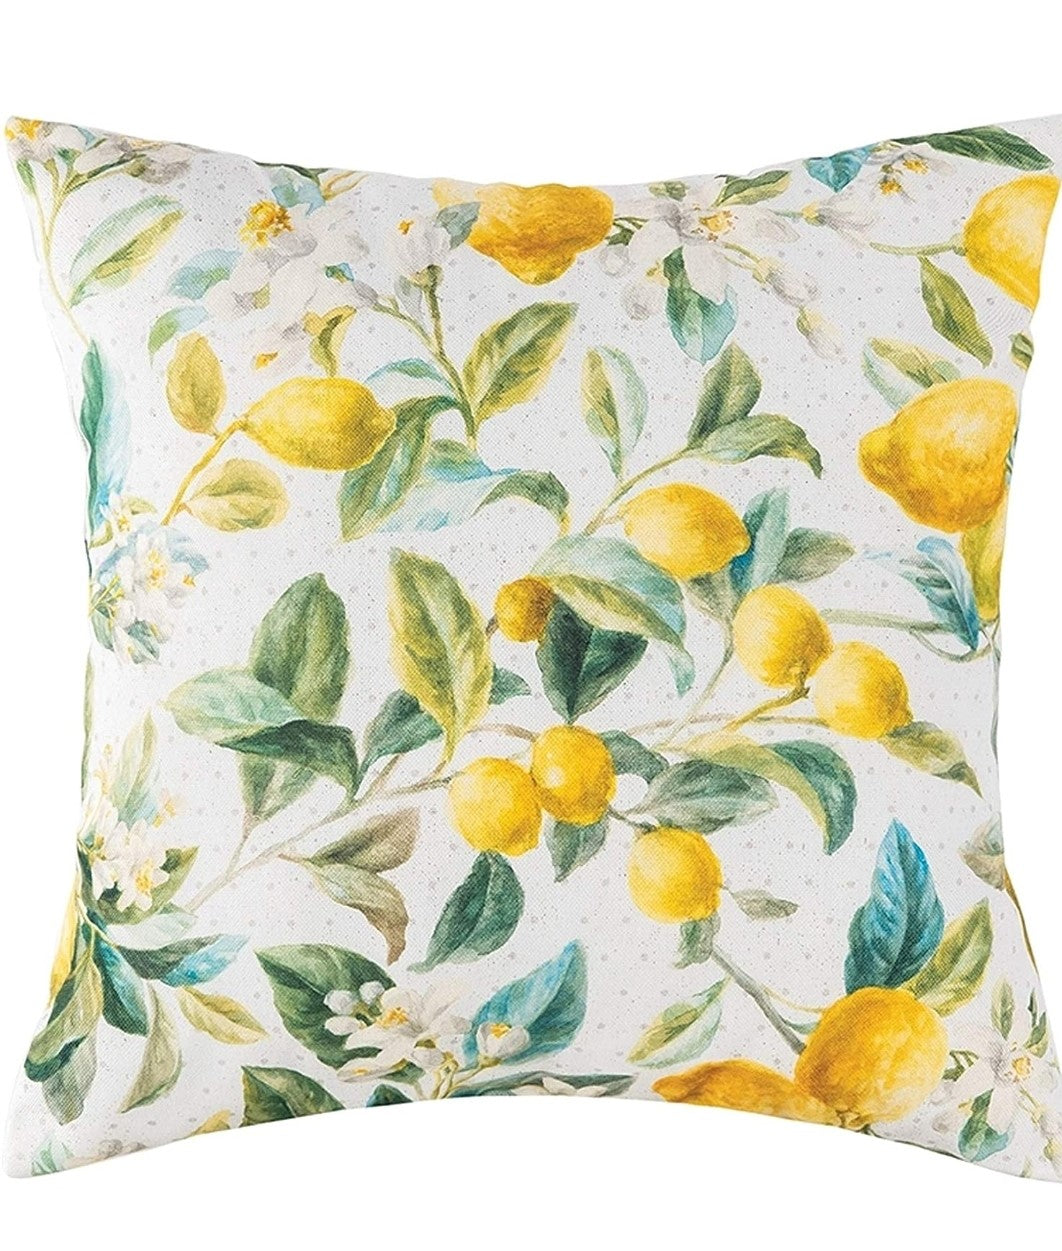 Lemon Grove Indoor / Outdoor Pillow